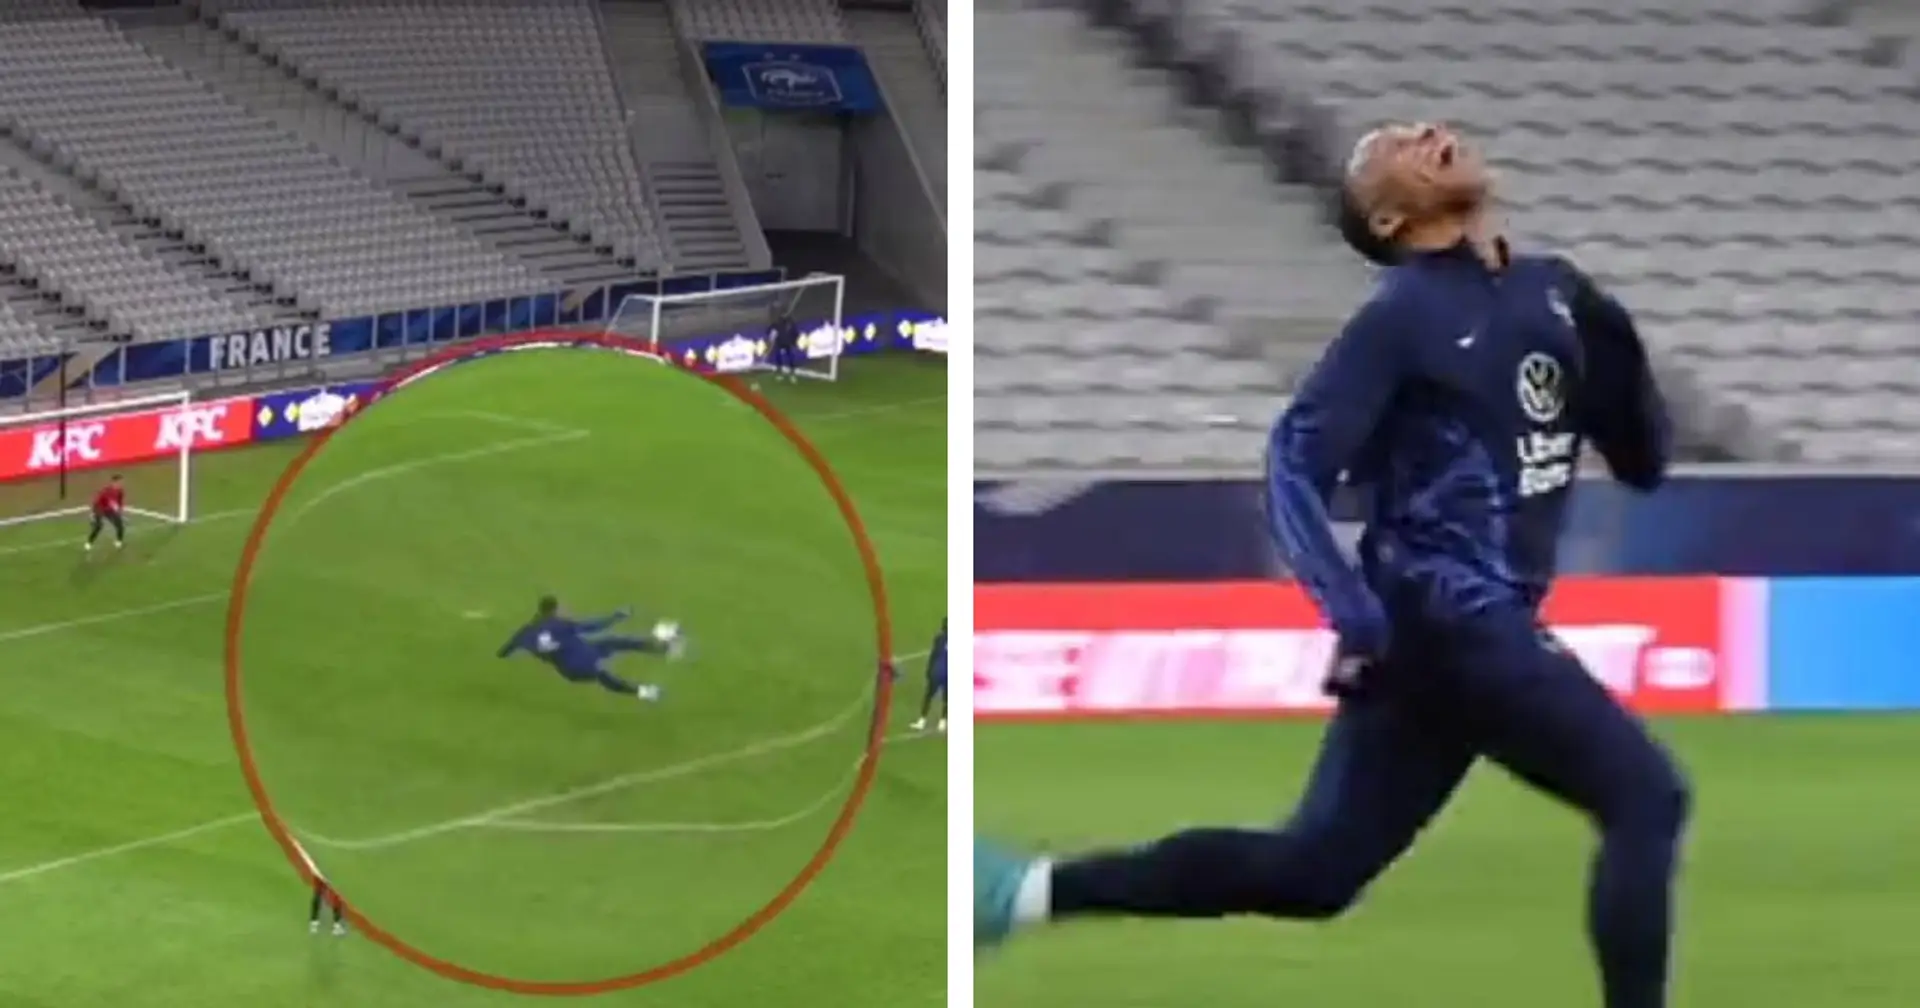 Mbappé marque un superbe but d'une volée acrobatique en entrainement - sa réaction est tout aussi belle (vidéo)